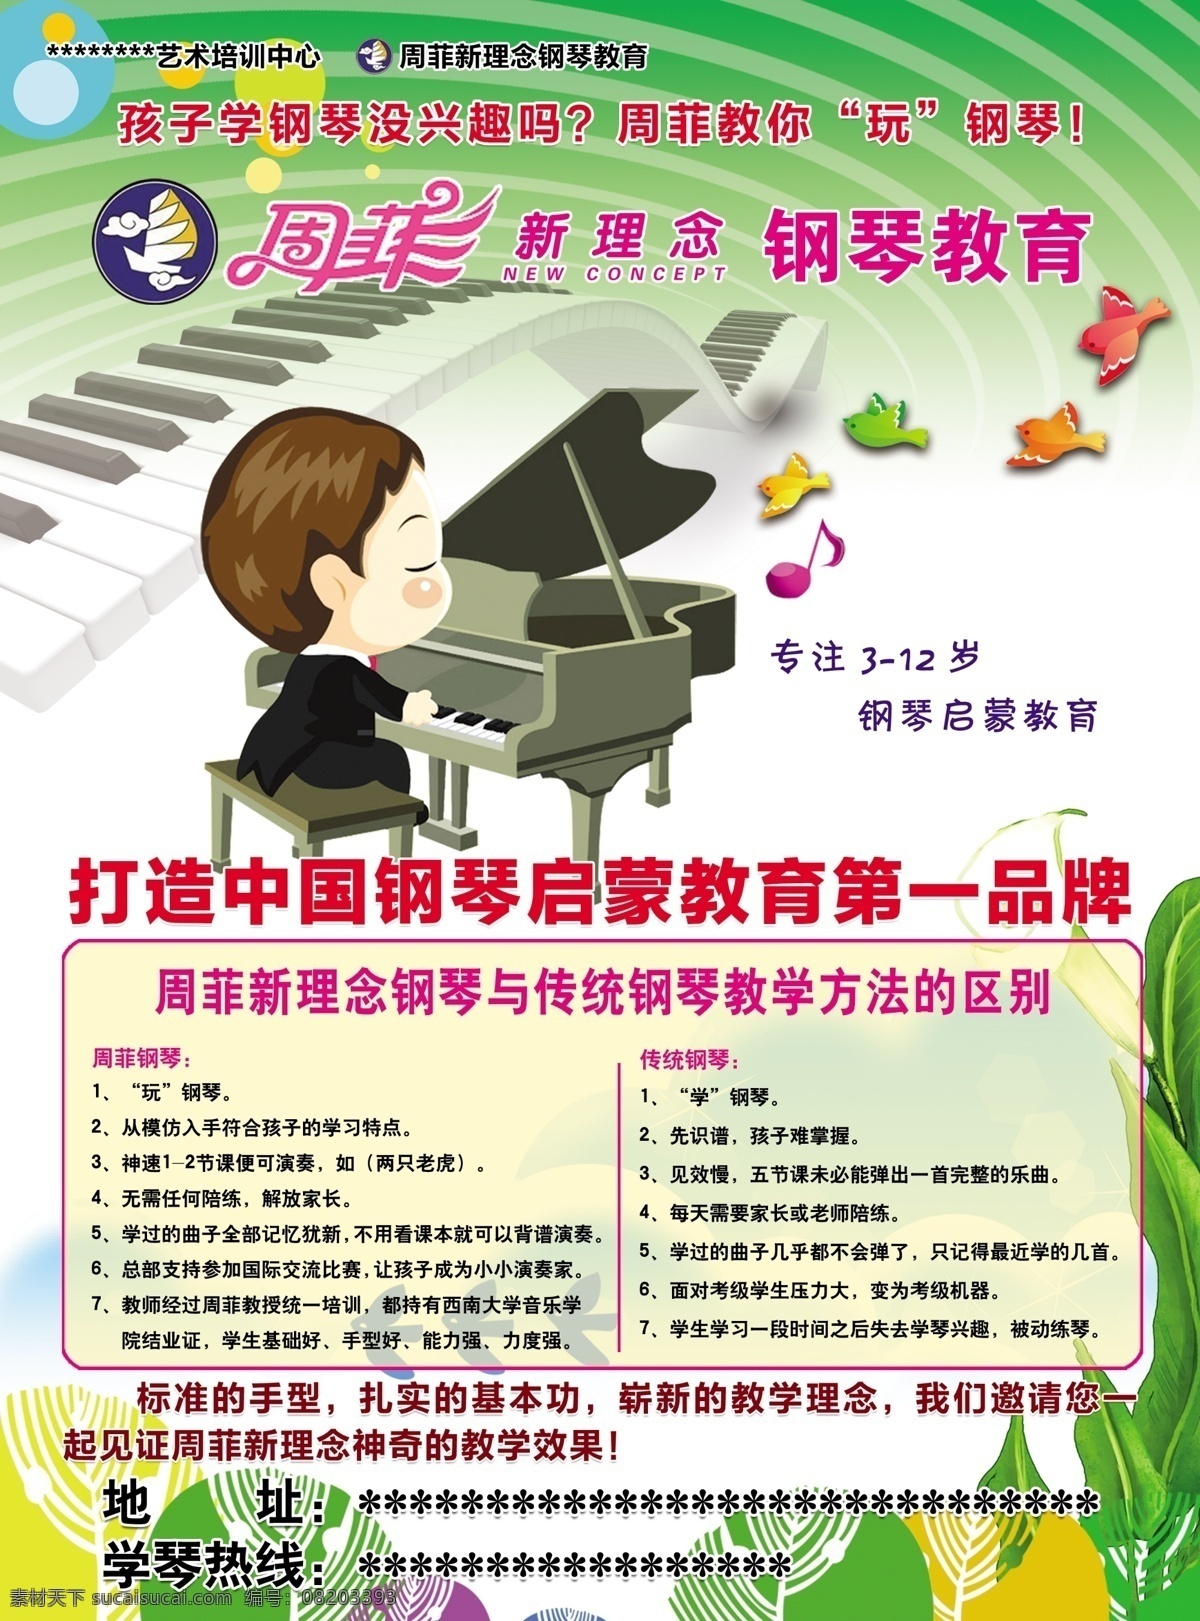 周 菲 钢琴 教育 宣传单 周菲 乐符 琴键 小鸟 dm宣传单